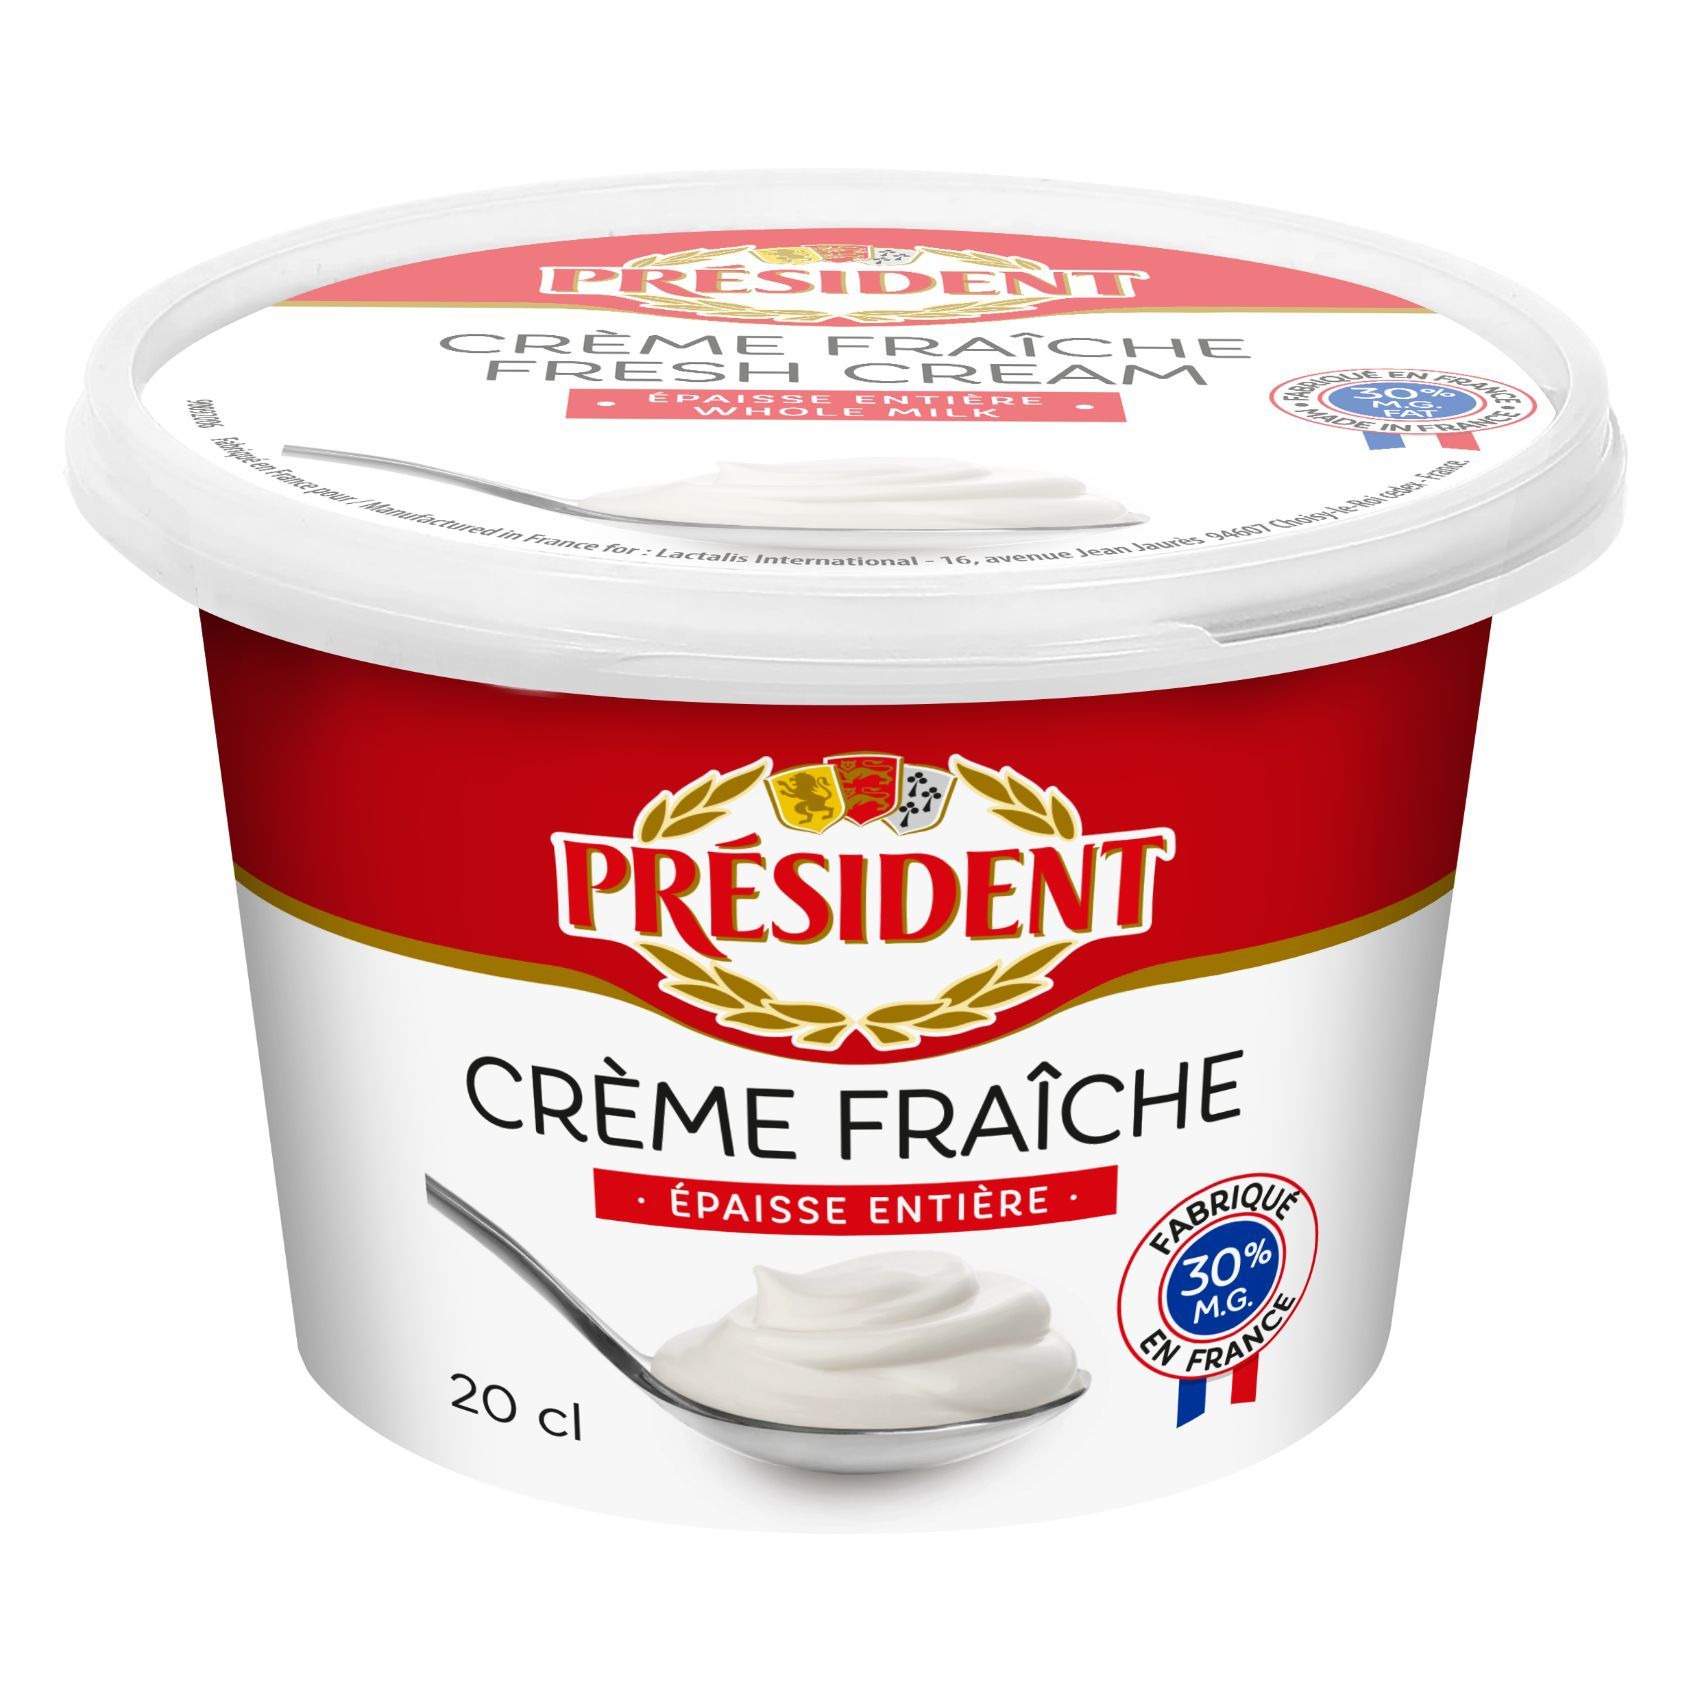 President Creme Fraiche (200g)